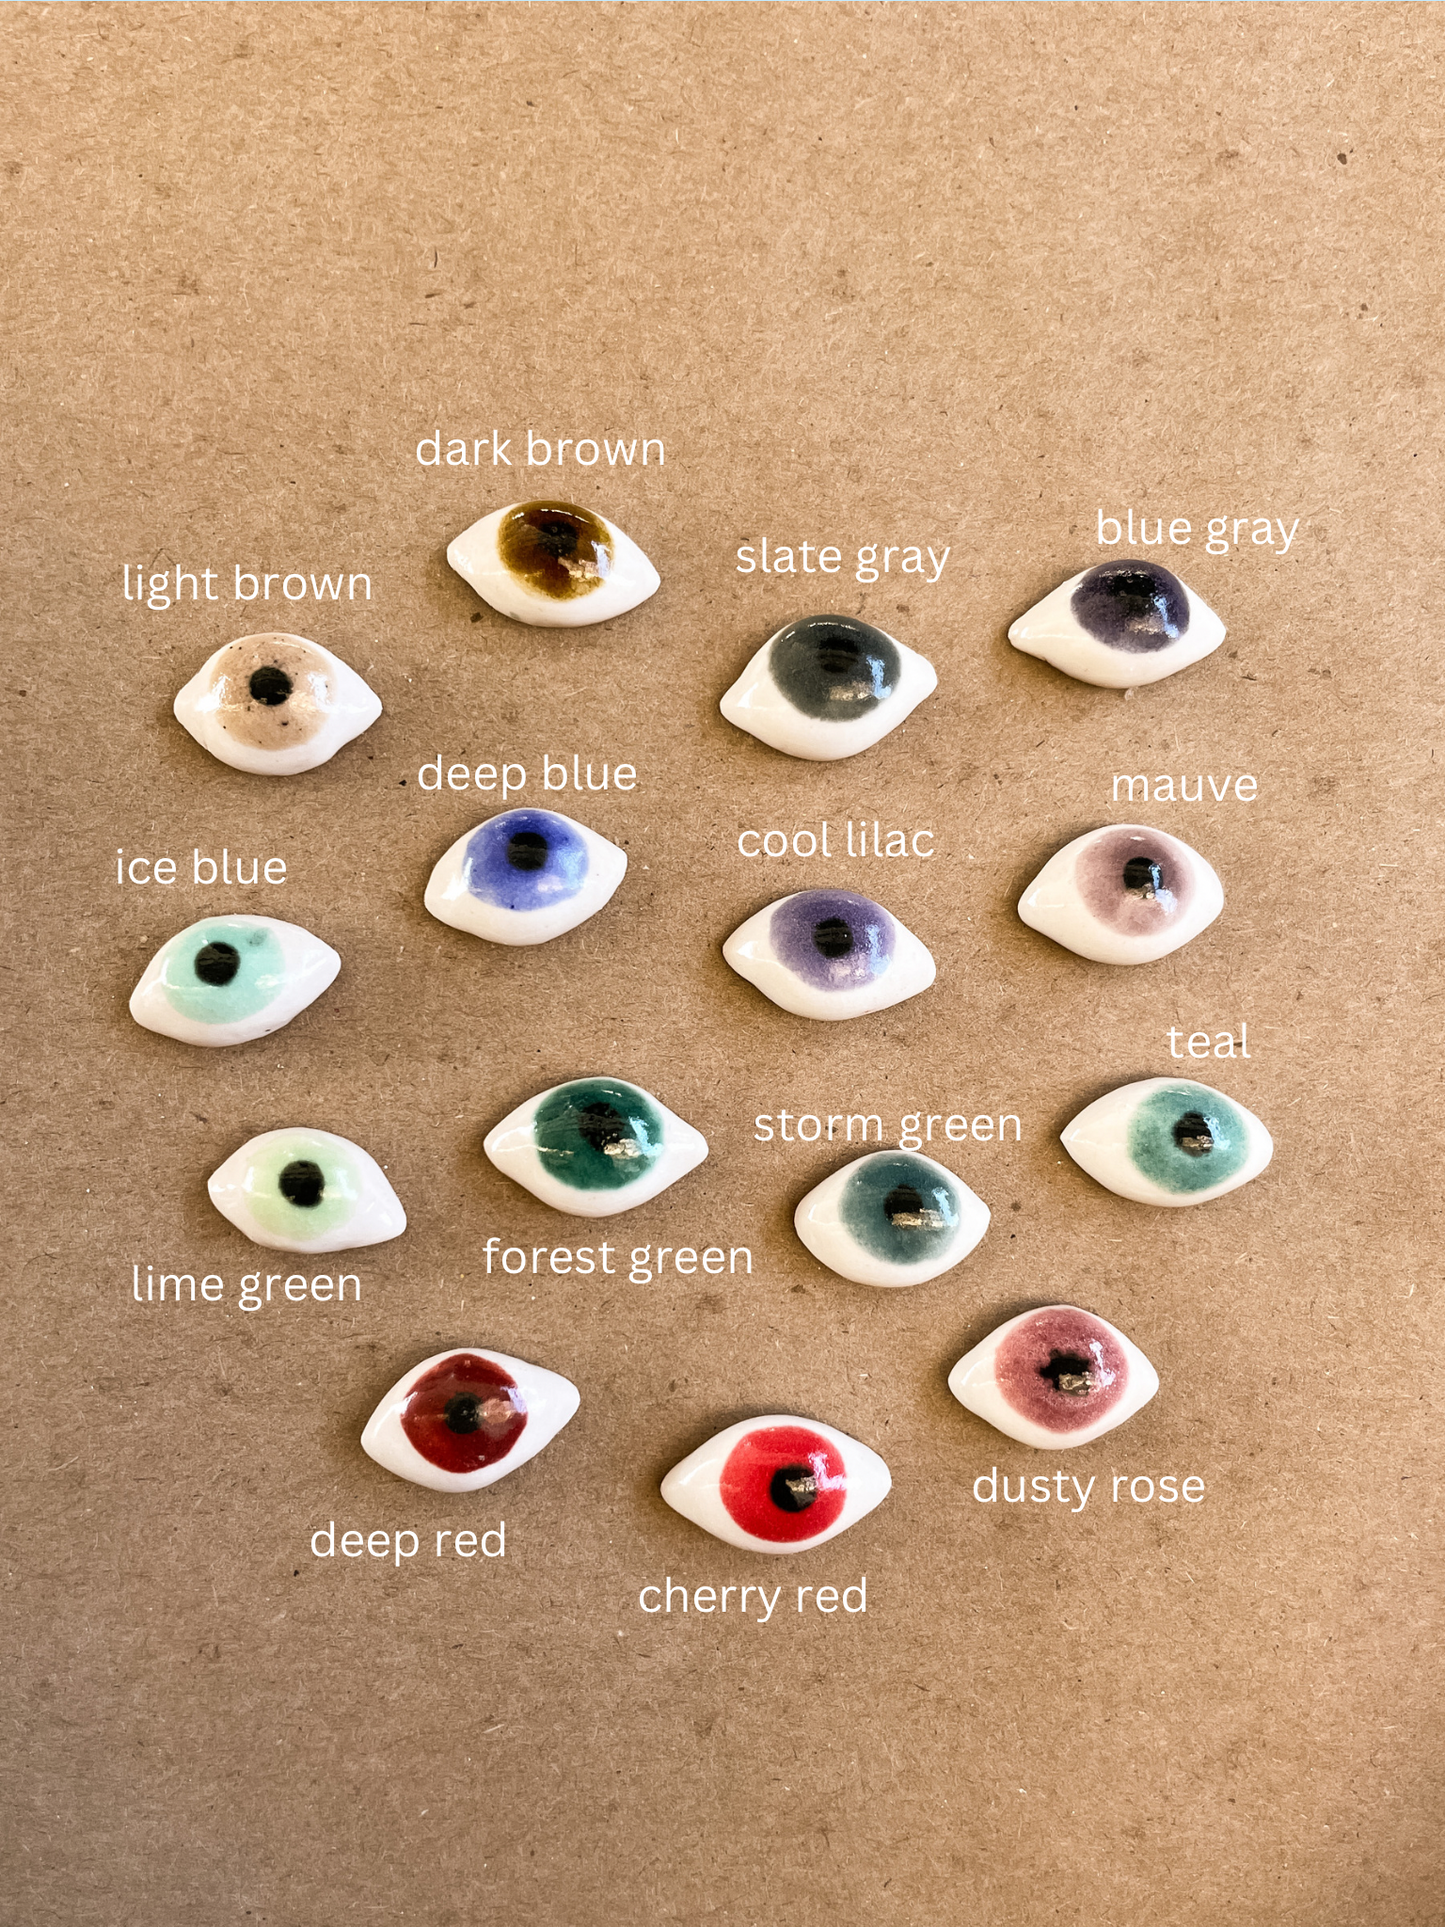 mini eyeball ring